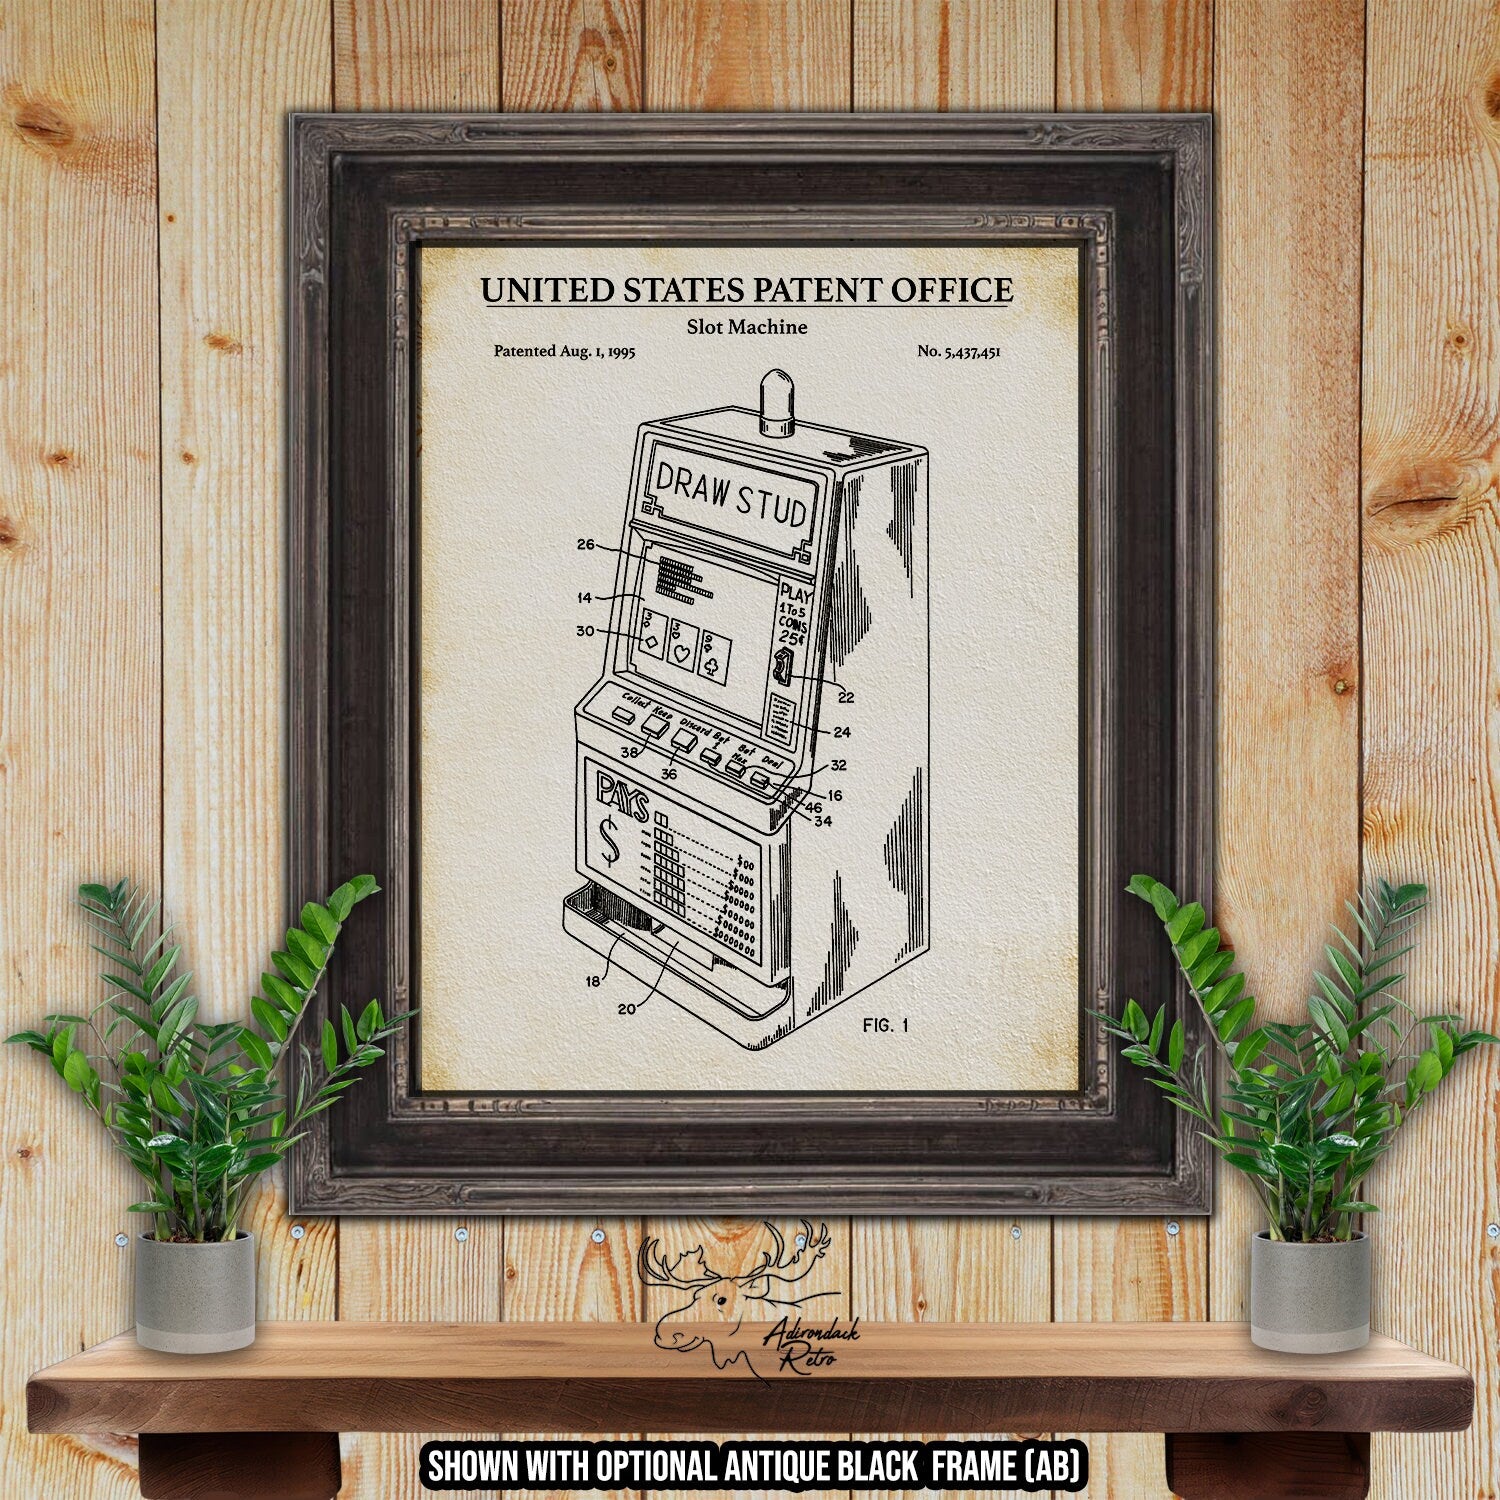 Slot Machine Patent Print - Historic 1995 Gaming Machine Invention at Adirondack Retro